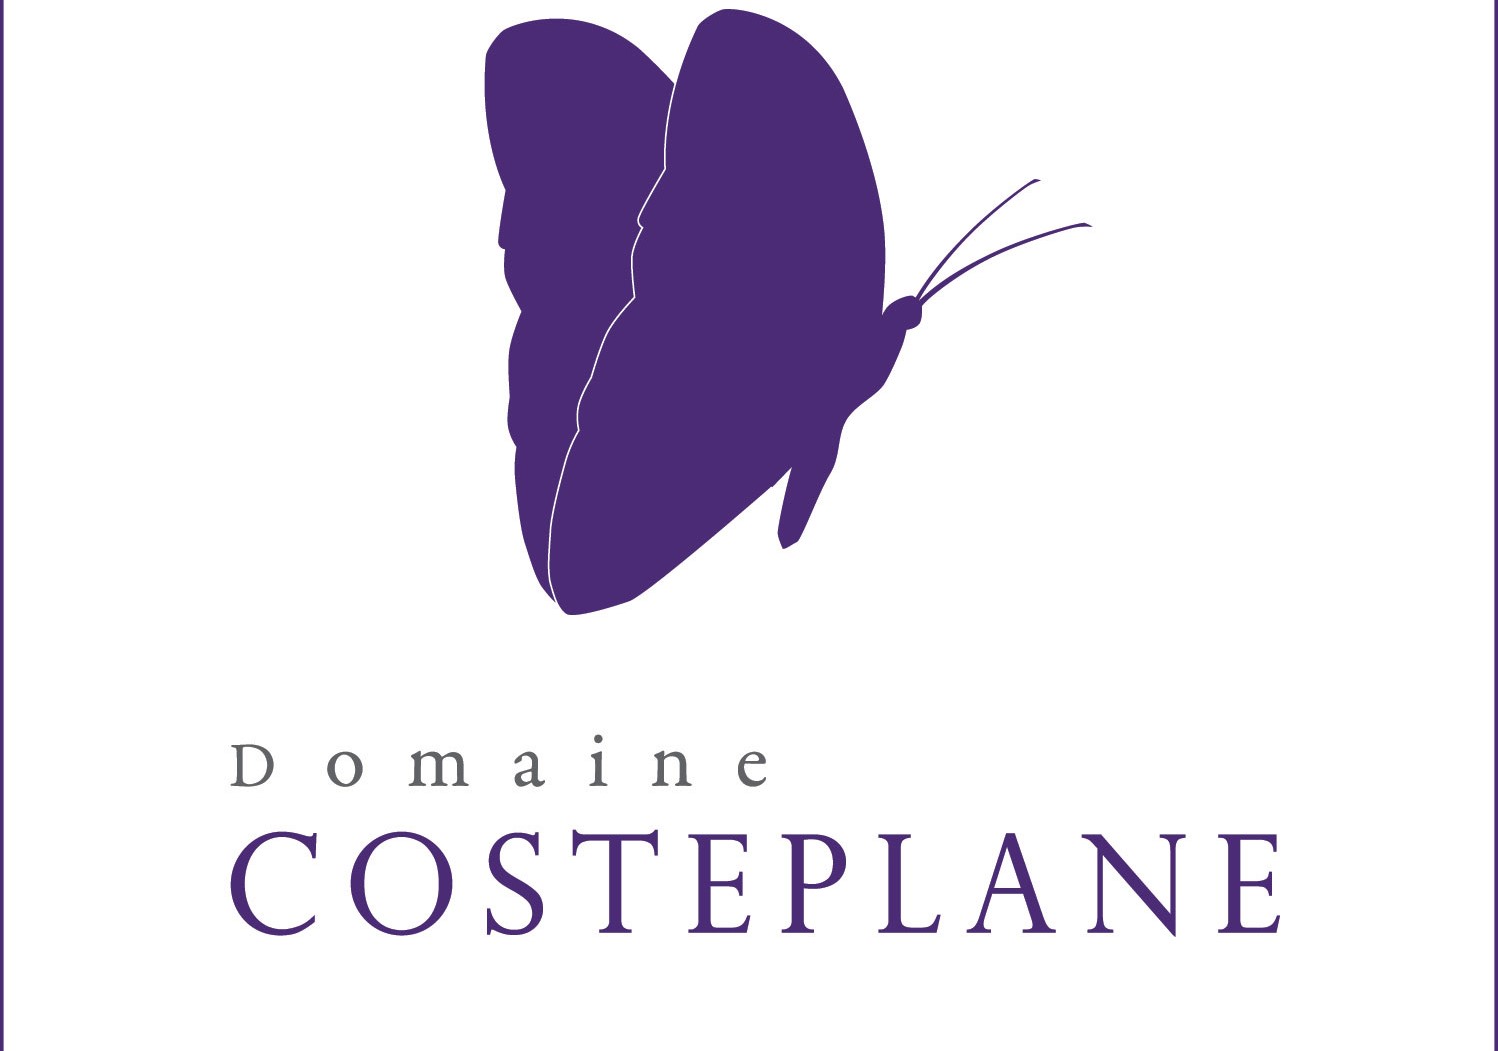 Domaine Costeplane